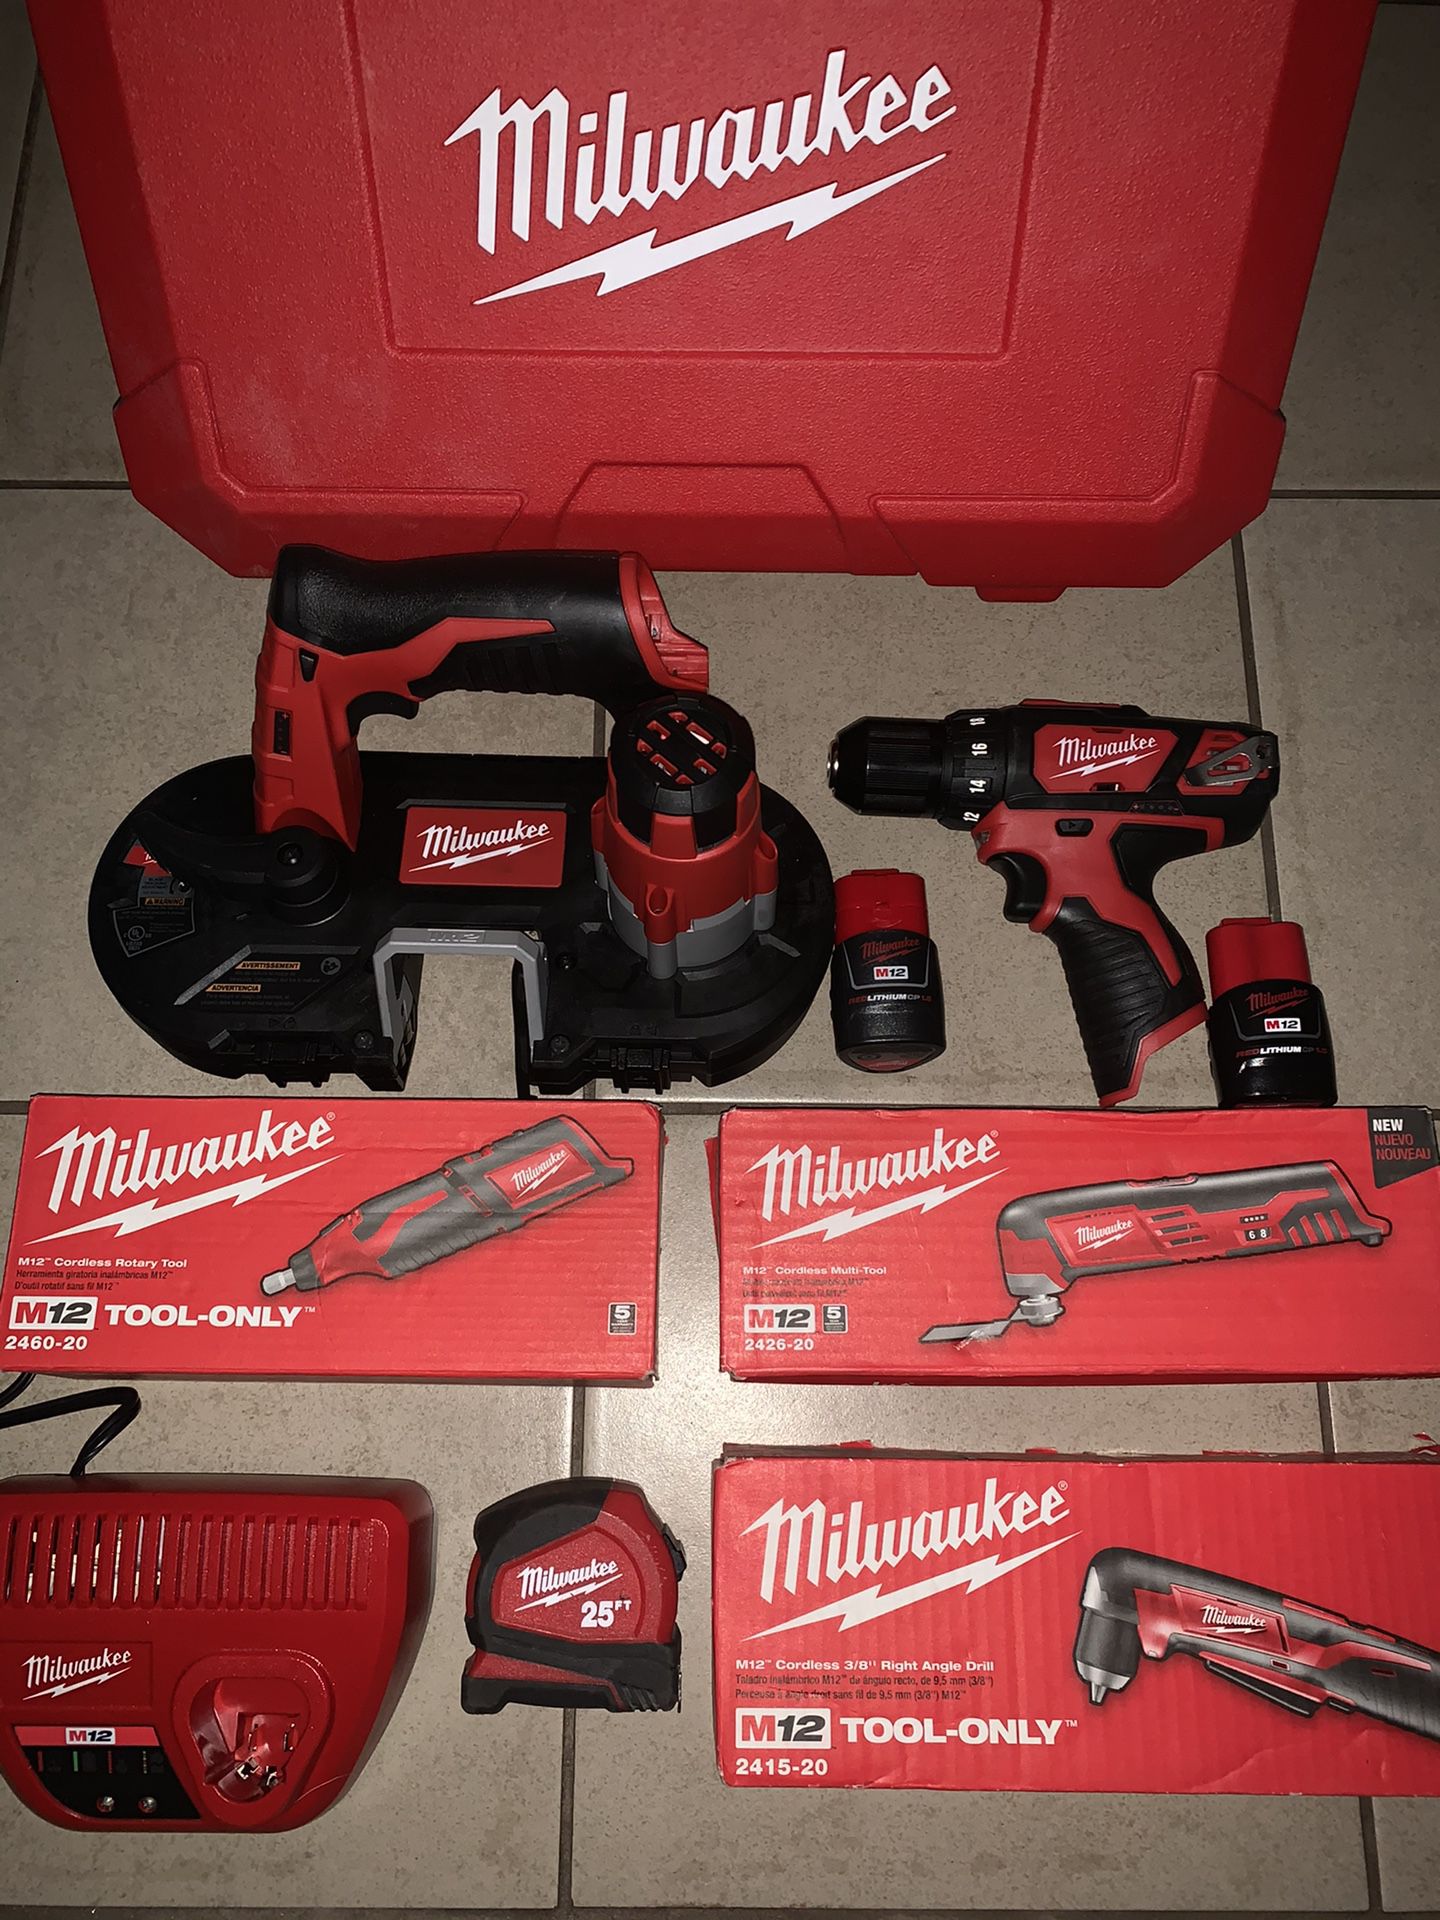 New m12 Milwaukee tools read post